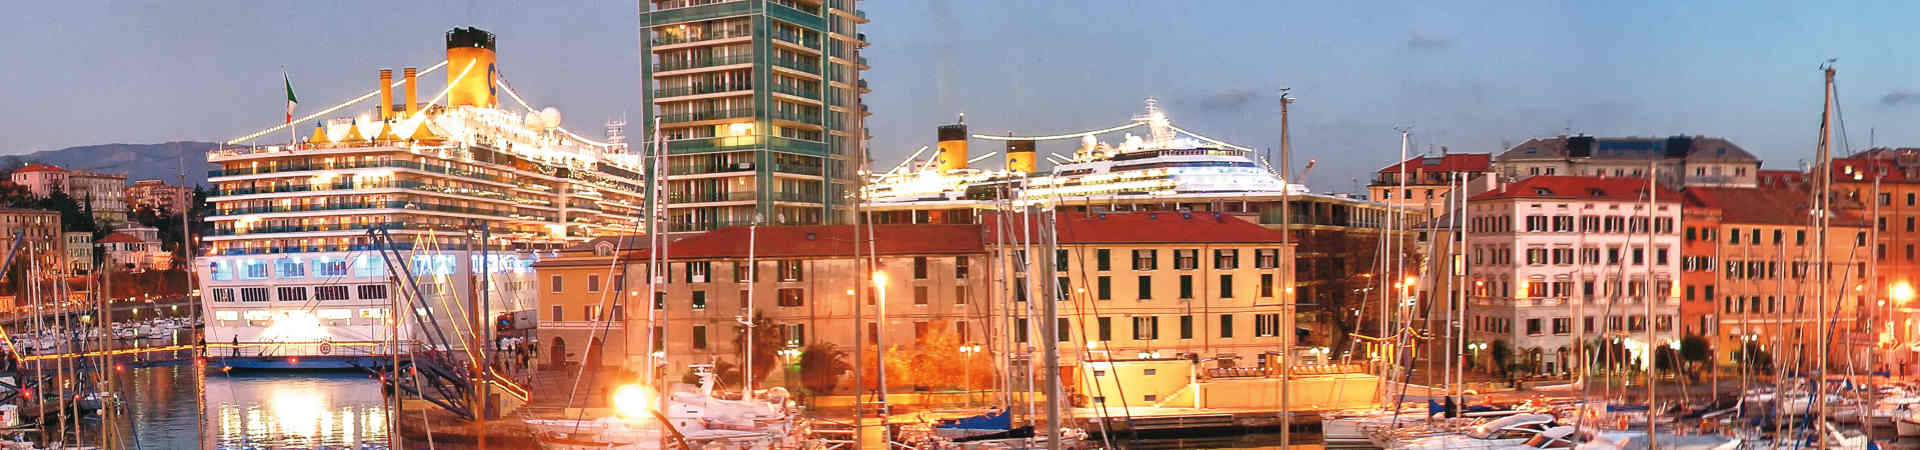 Immagine del porto di arrivo Savona per la rotta traghetto Bastia - Savona